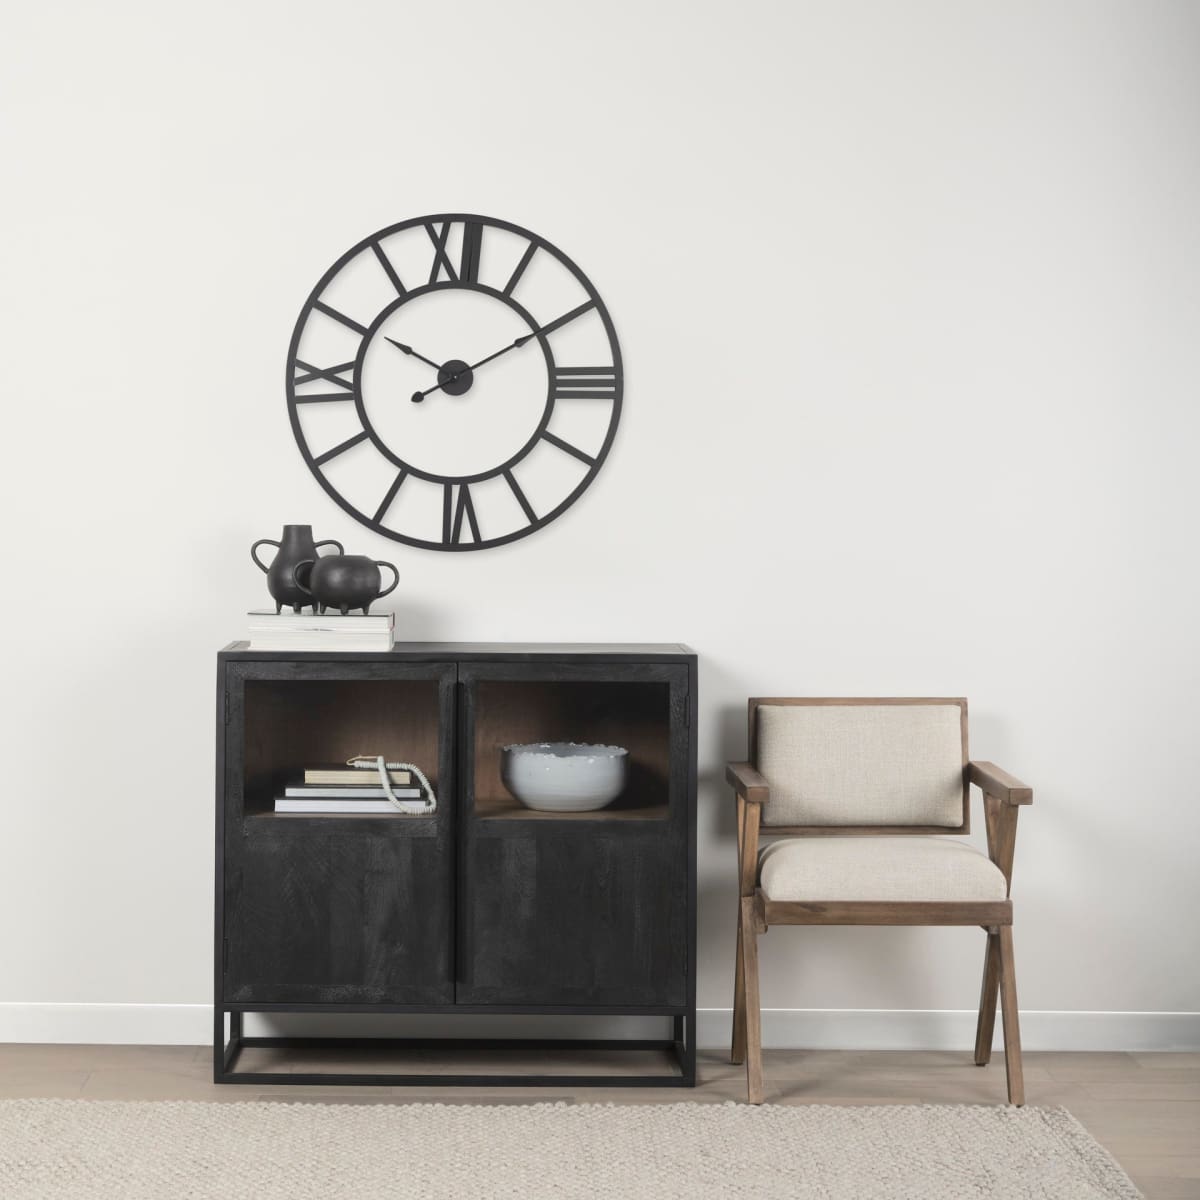 Furniture Barn - Stoke Wall Clock Black Metal